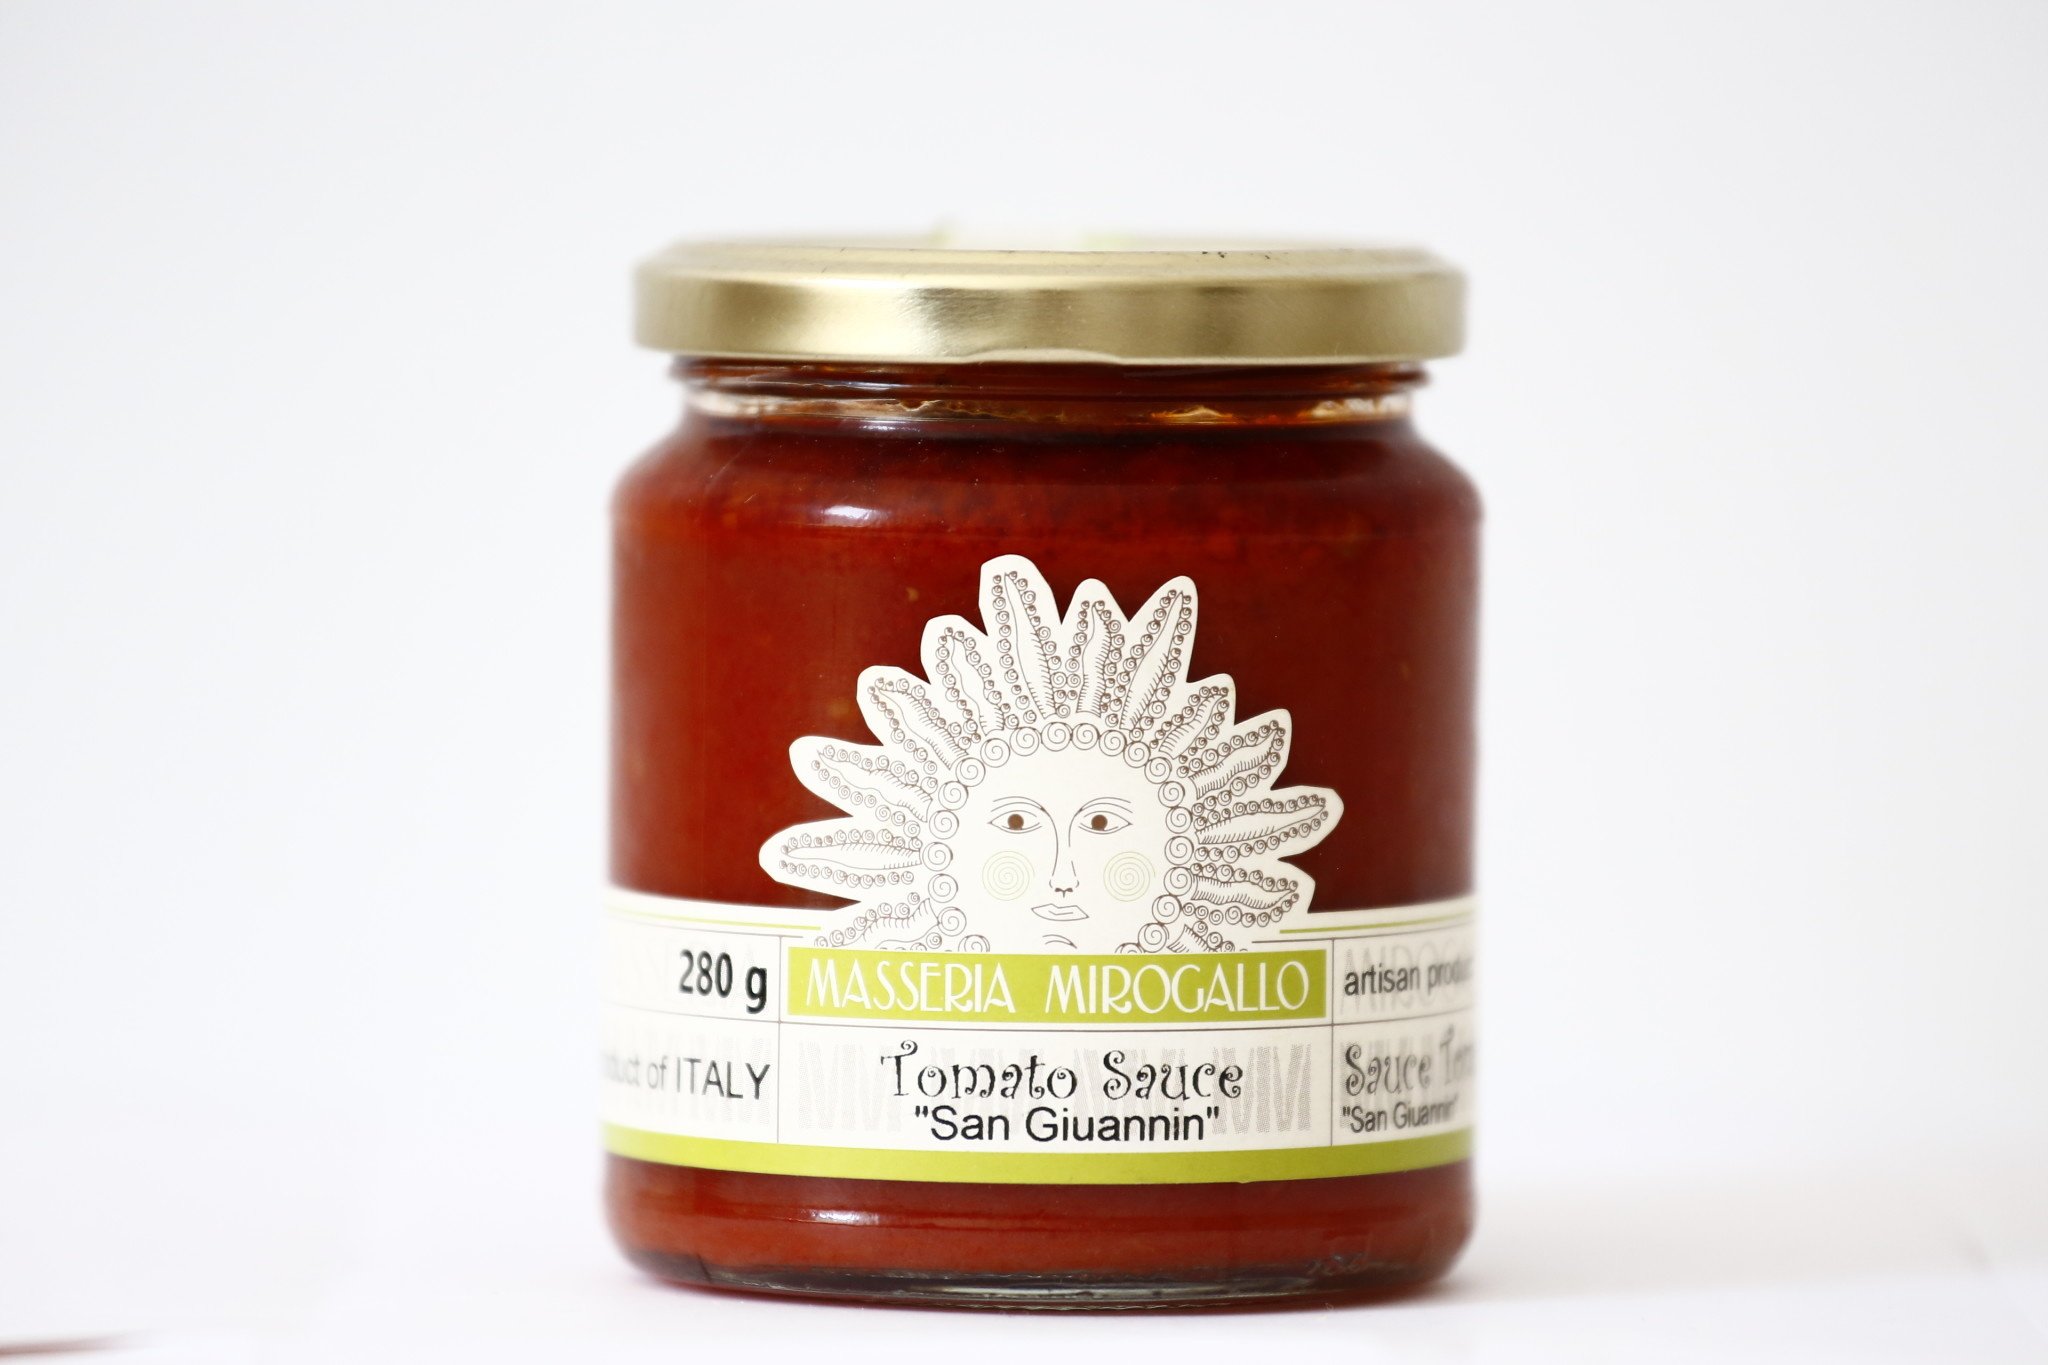 Masseria Mirogallo "Mirogallo" Tomato Based Sauce - Capers & Olives "Sugo Alla San Giuannin" 8/280g